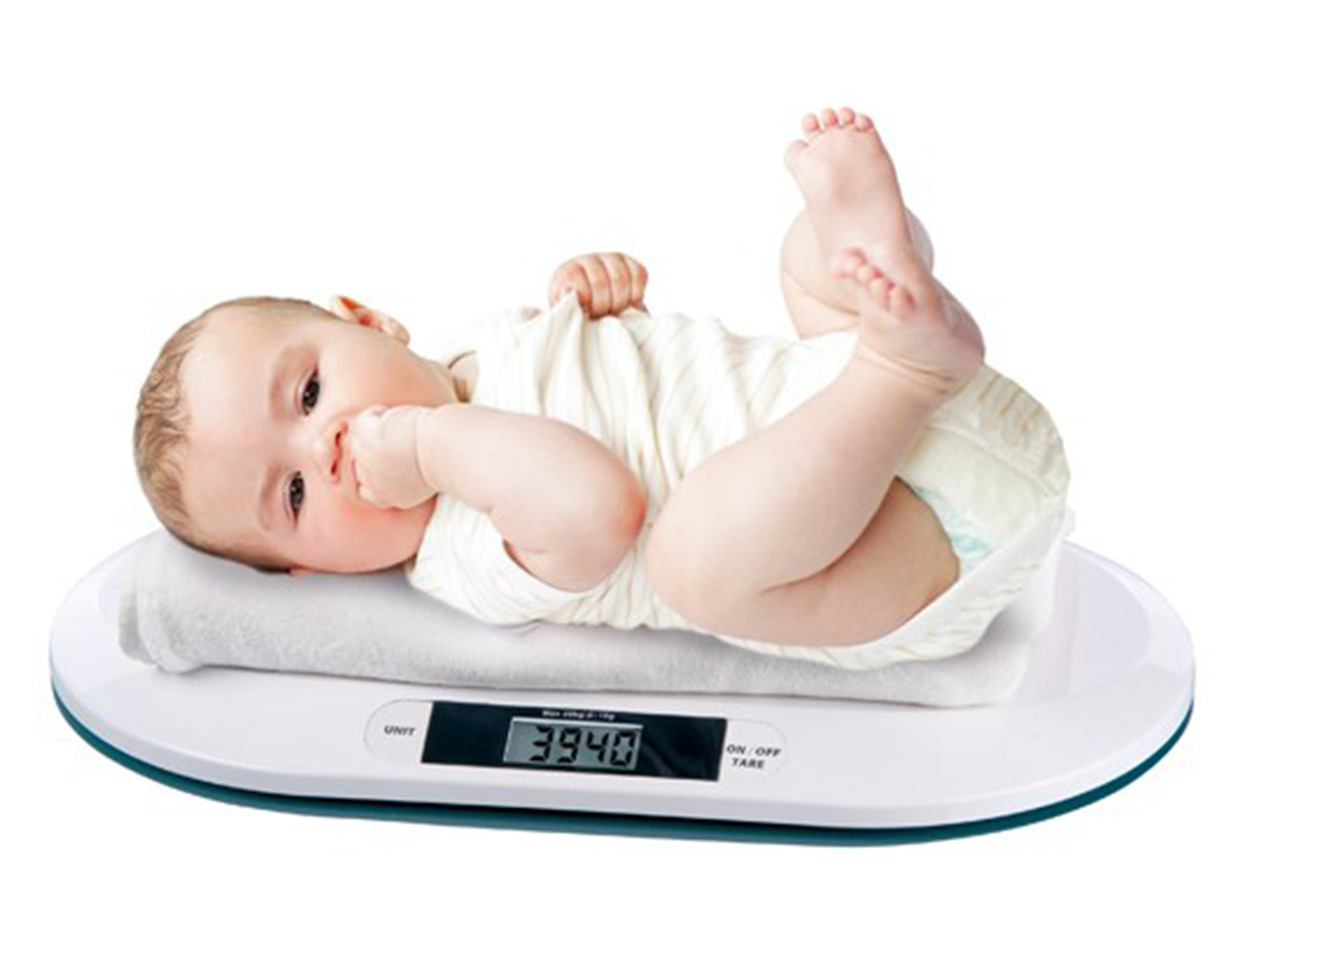 Tăng cân ở trẻ sơ sinh bao nhiêu là hợp lý, chuẩn khoa học?